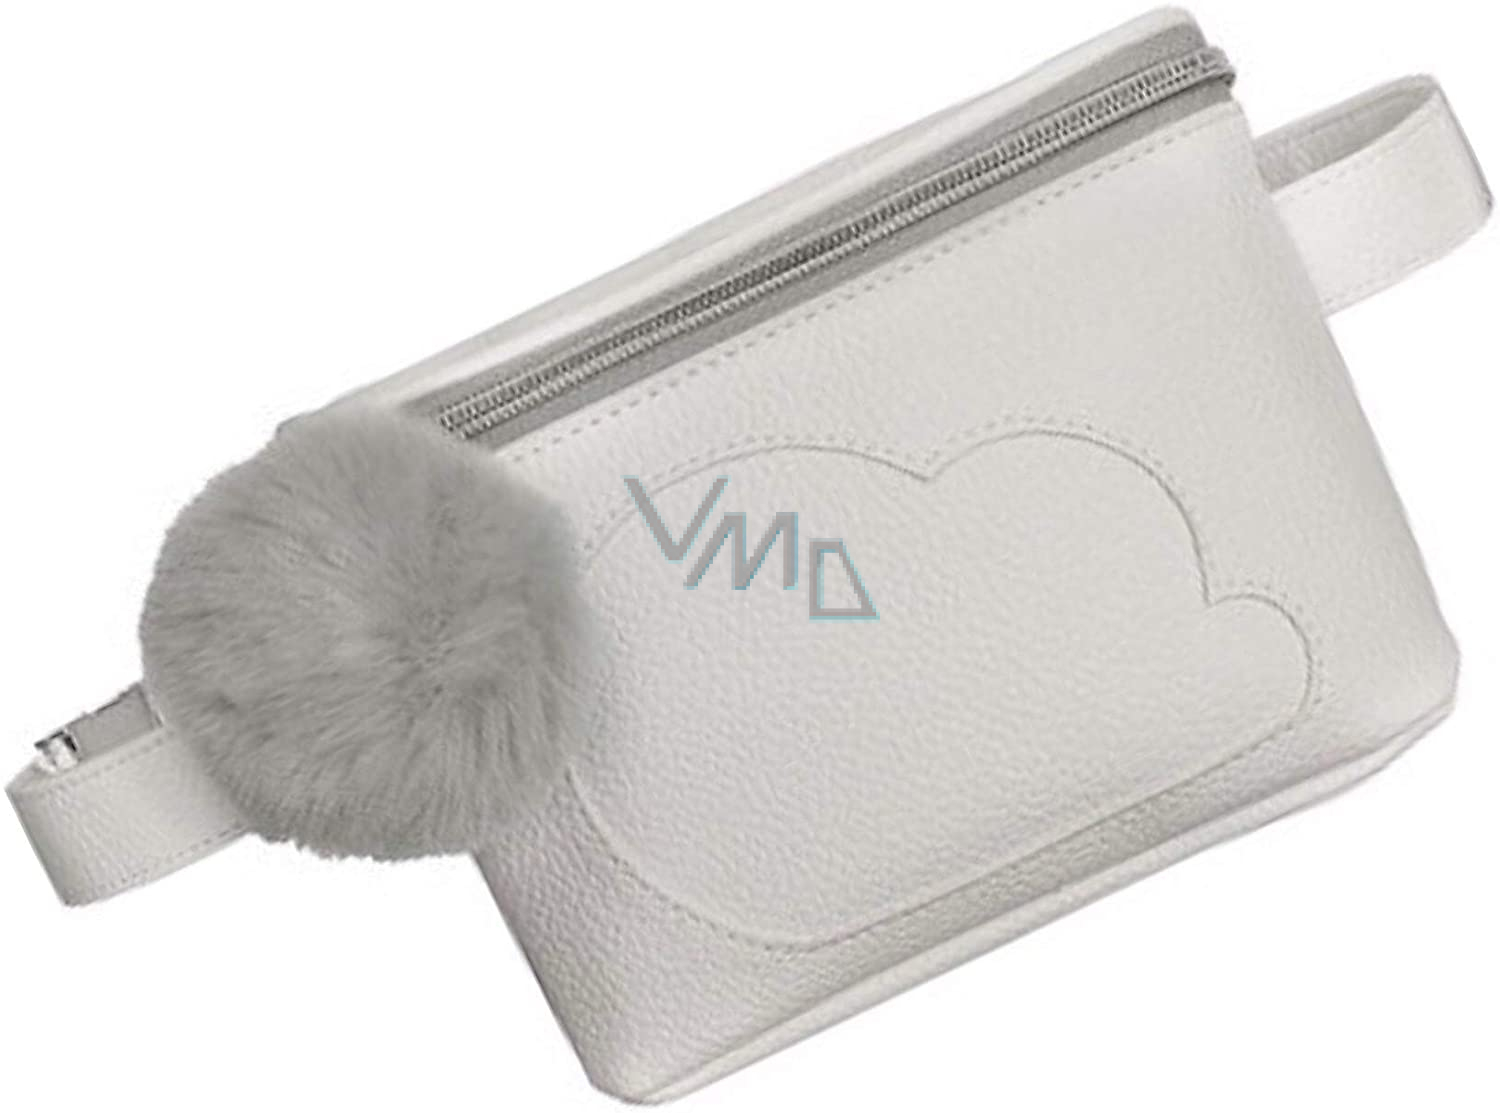 Ariana Grande Cloud bag 20 x 15 cm - VMD parfumerie - drogerie